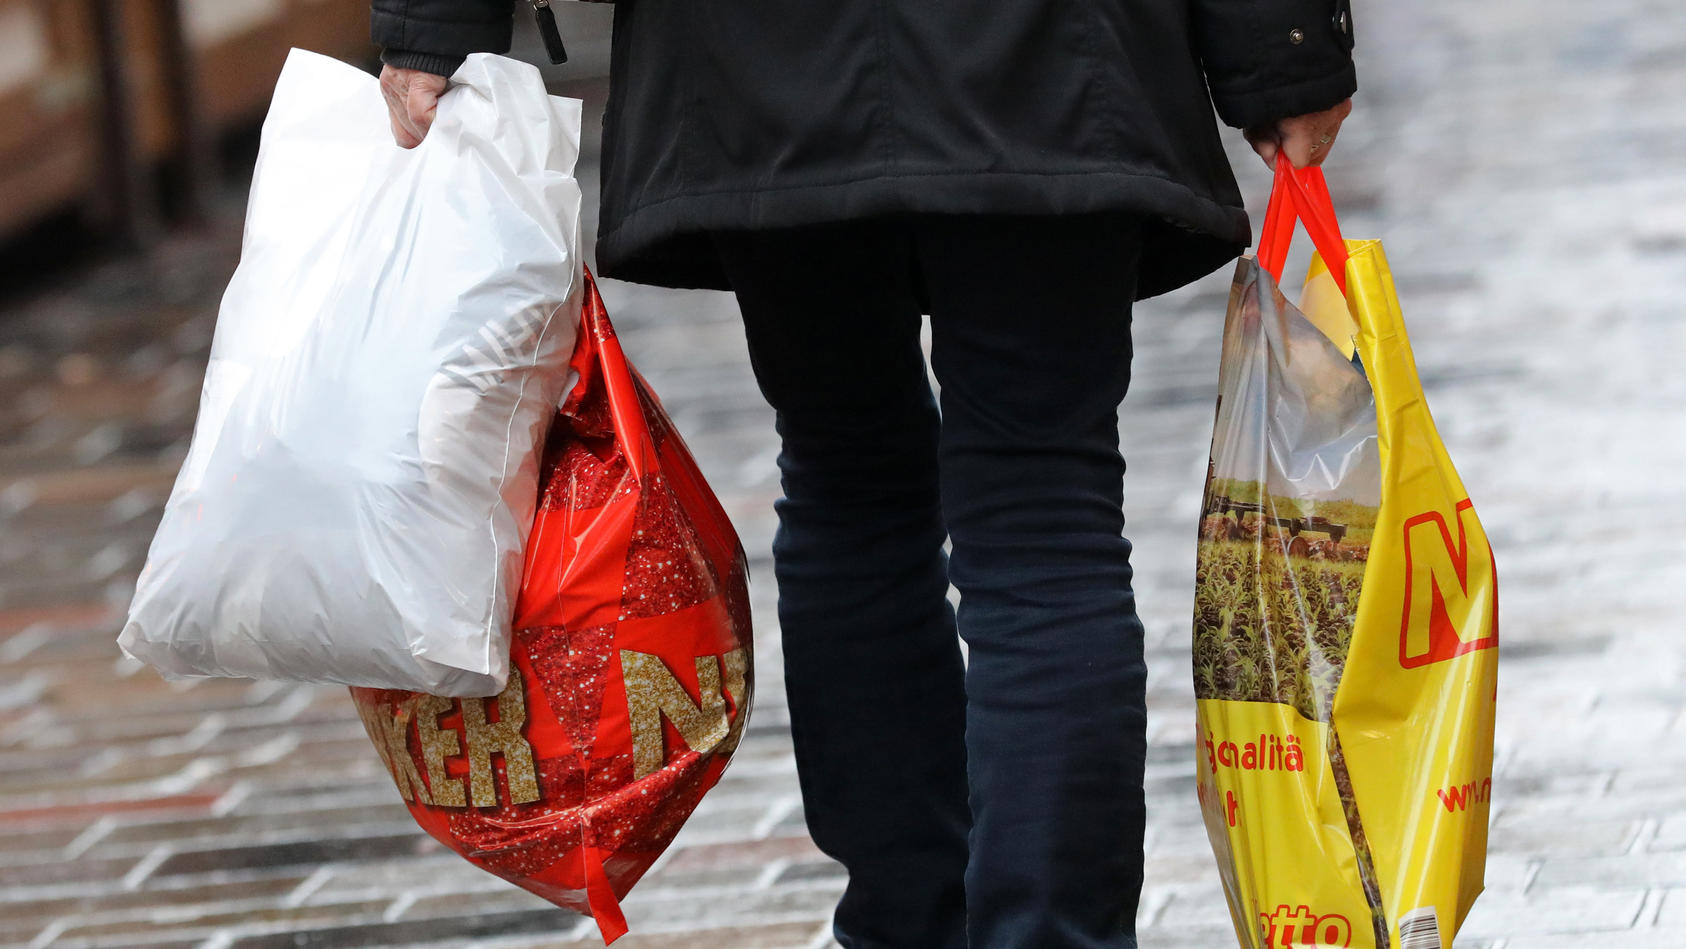 ARCHIV - 20.12.2018, Mecklenburg-Vorpommern, Rostock: Eine Frau geht mit Einkaufstüten aus Plastik über den Fußweg. Leichte Plastiktüten dürfen in Deutschland ab 2022 nicht mehr ausgegeben werden. Ab dem 1. Januar dürfen an den deutschen Ladenkassen 